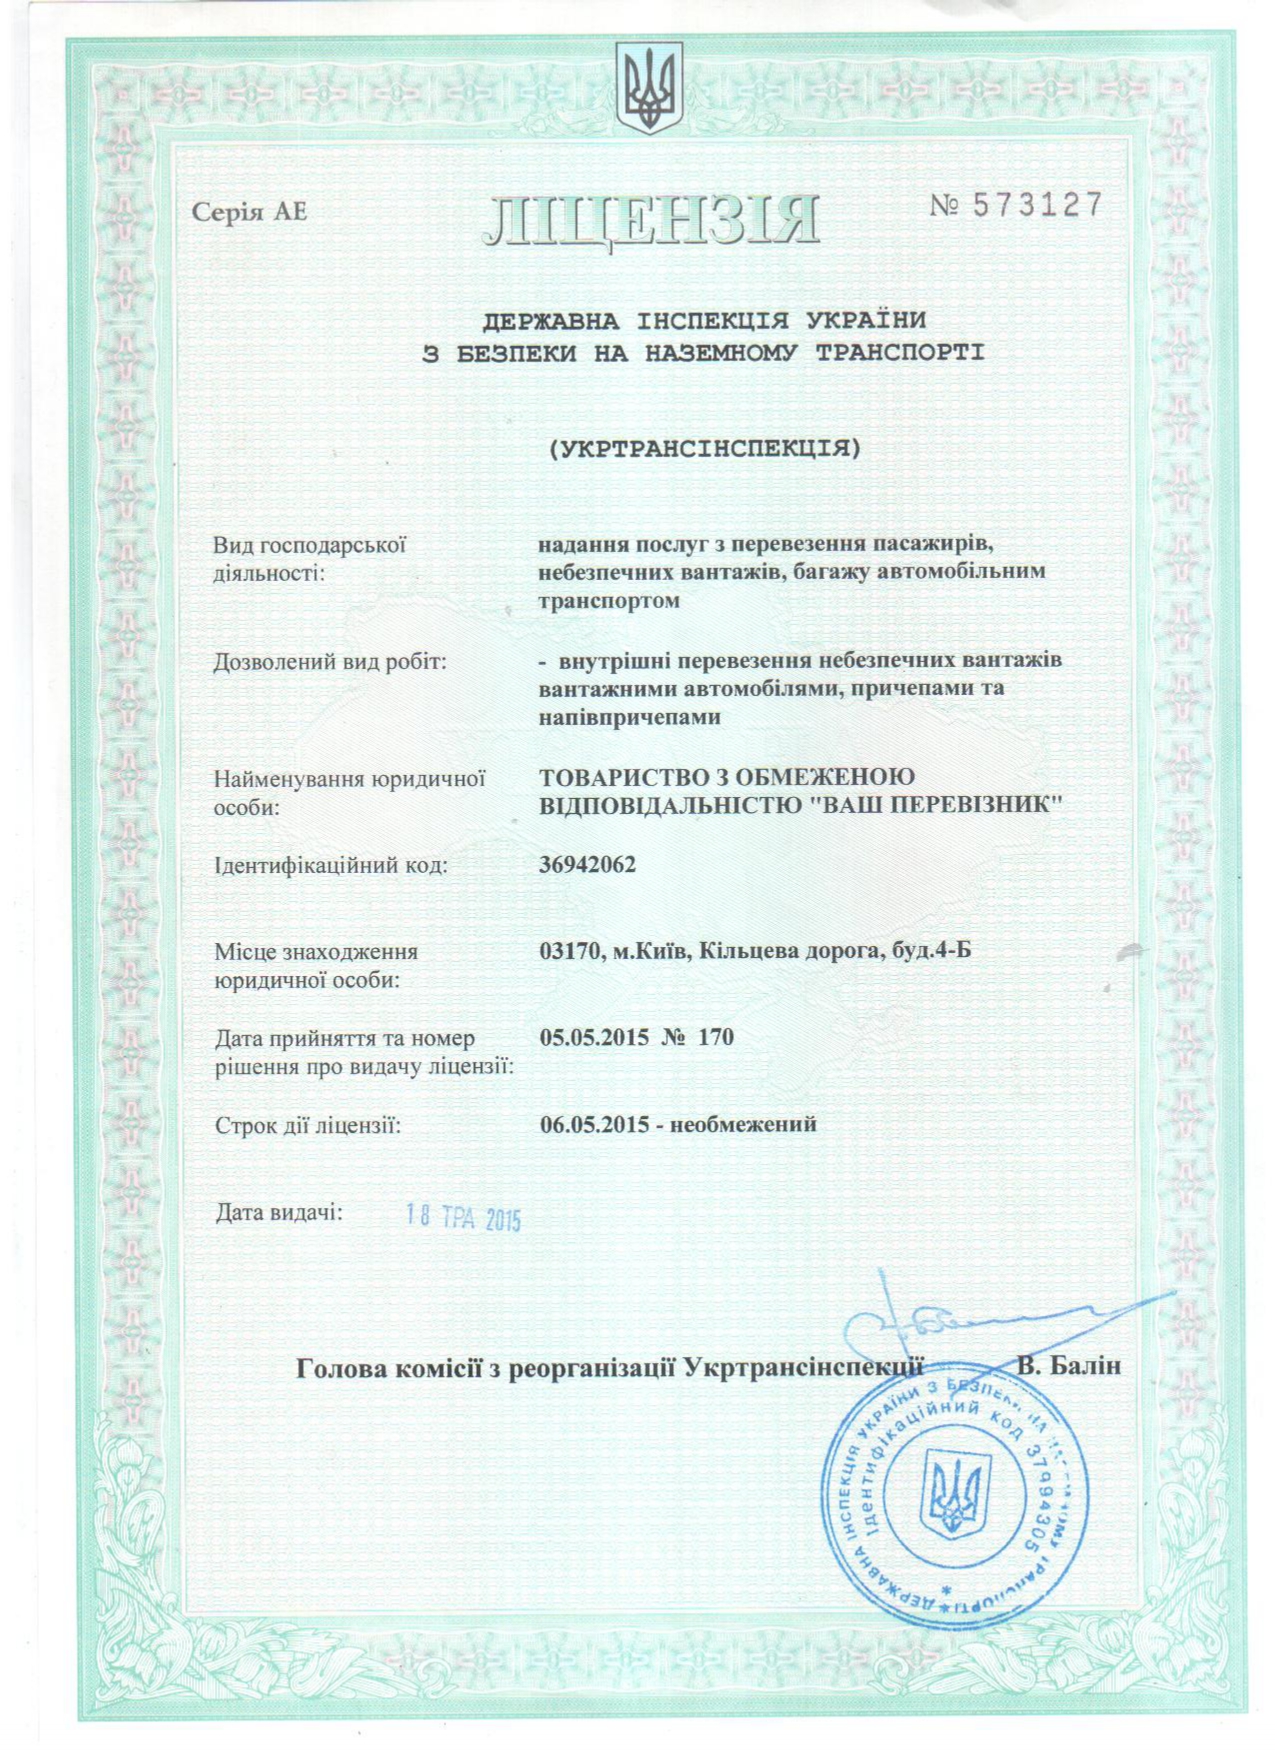 license - Сертифікати компанії